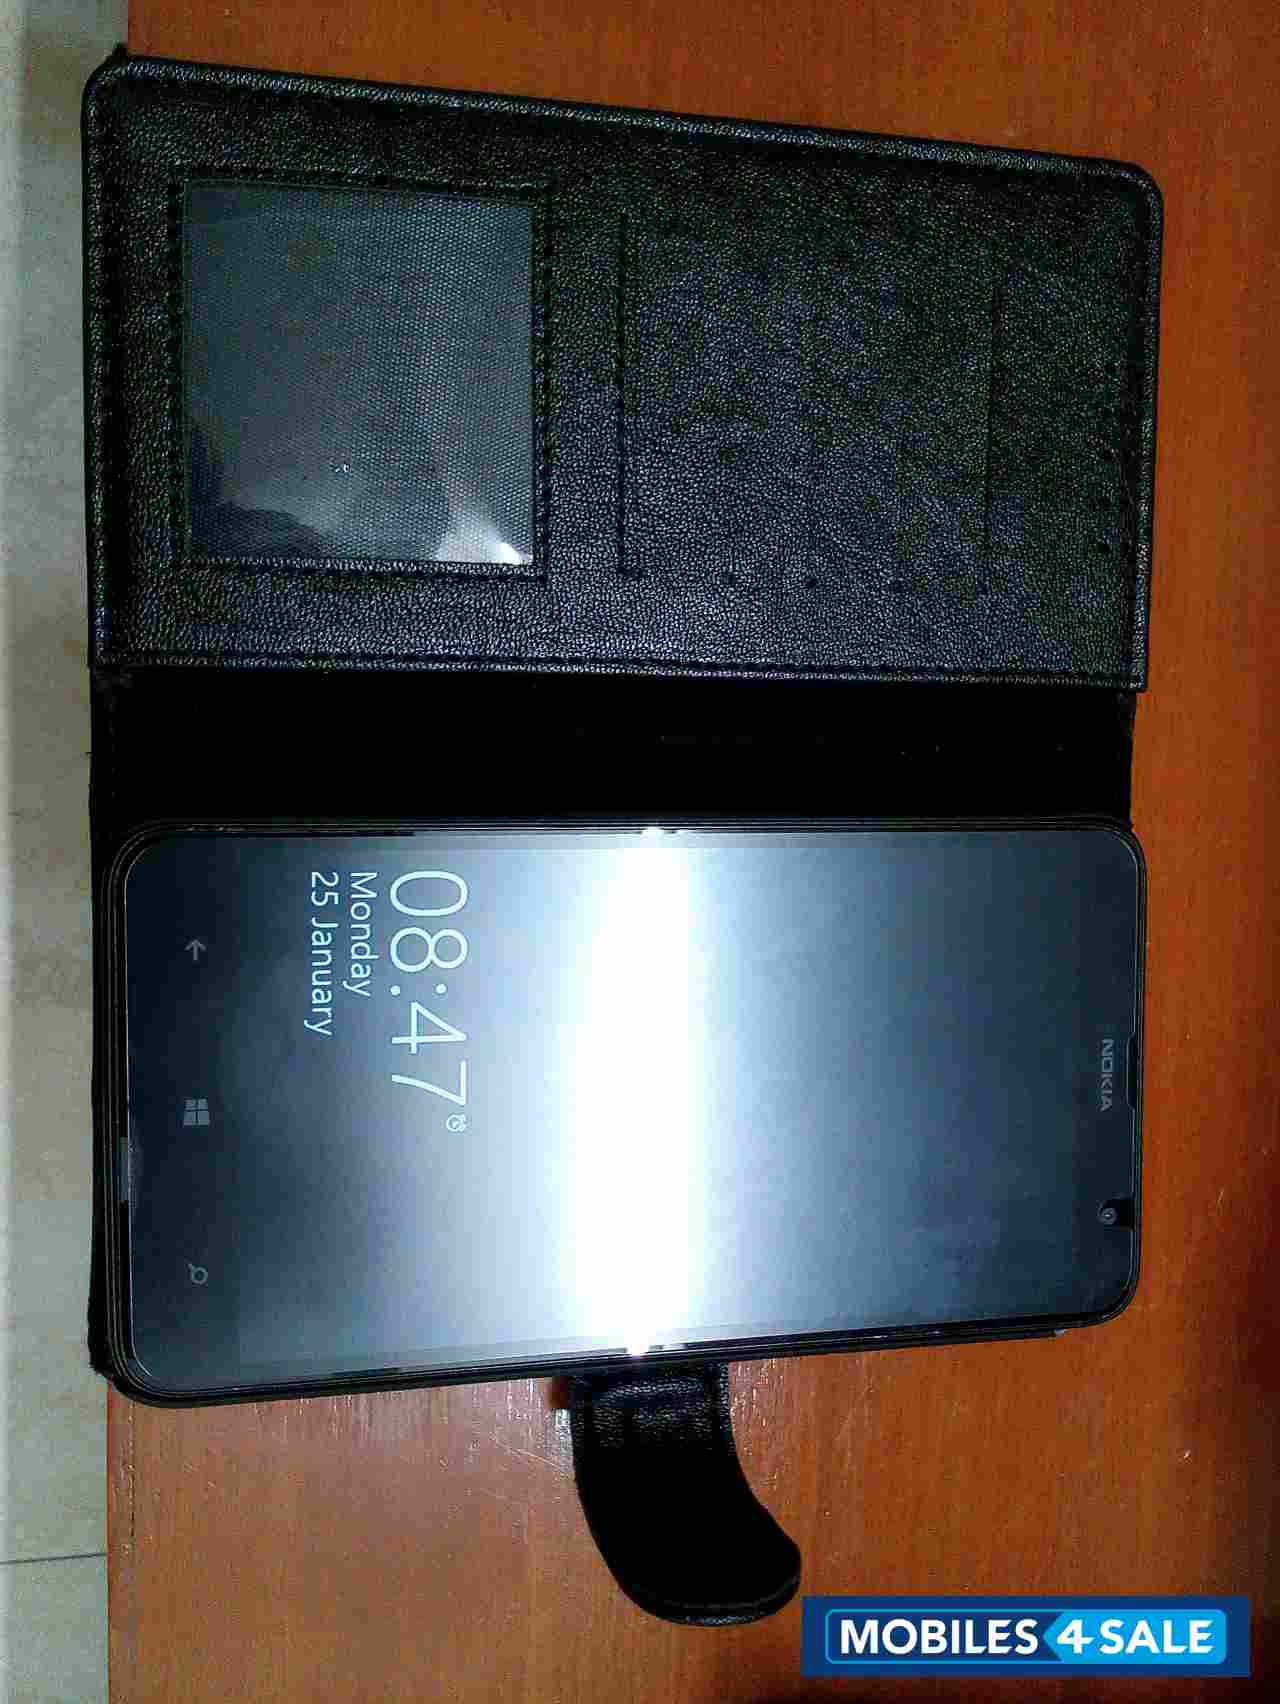 Black Nokia Lumia 1320